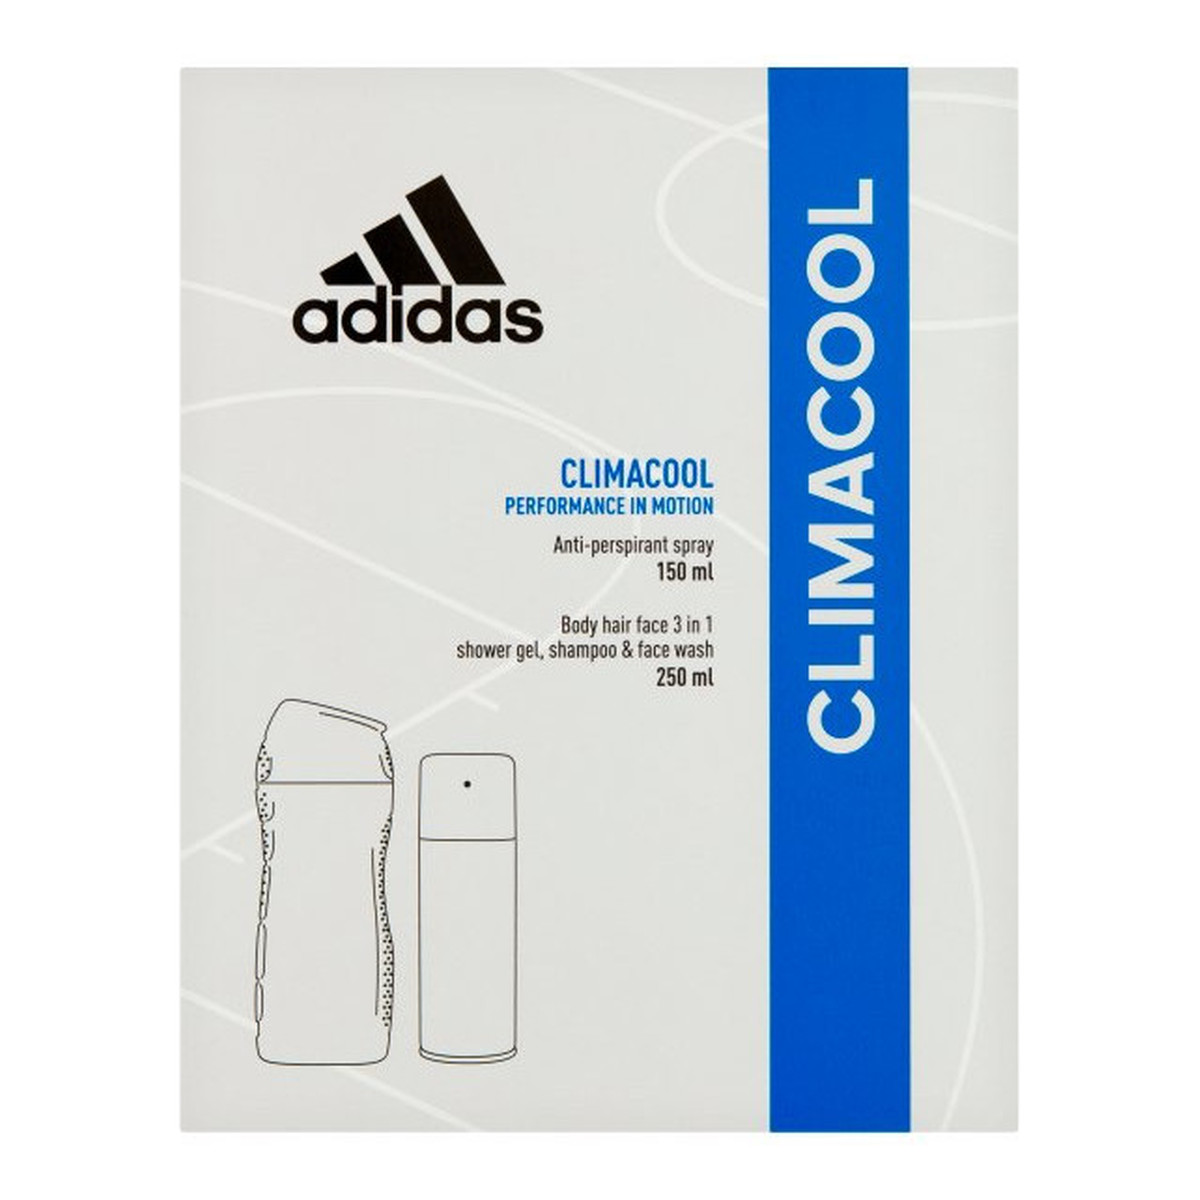 Adidas Climacool Men Zestaw prezentowy (dezodorant spray 150ml+żel pod prysznic 3in1 250ml)